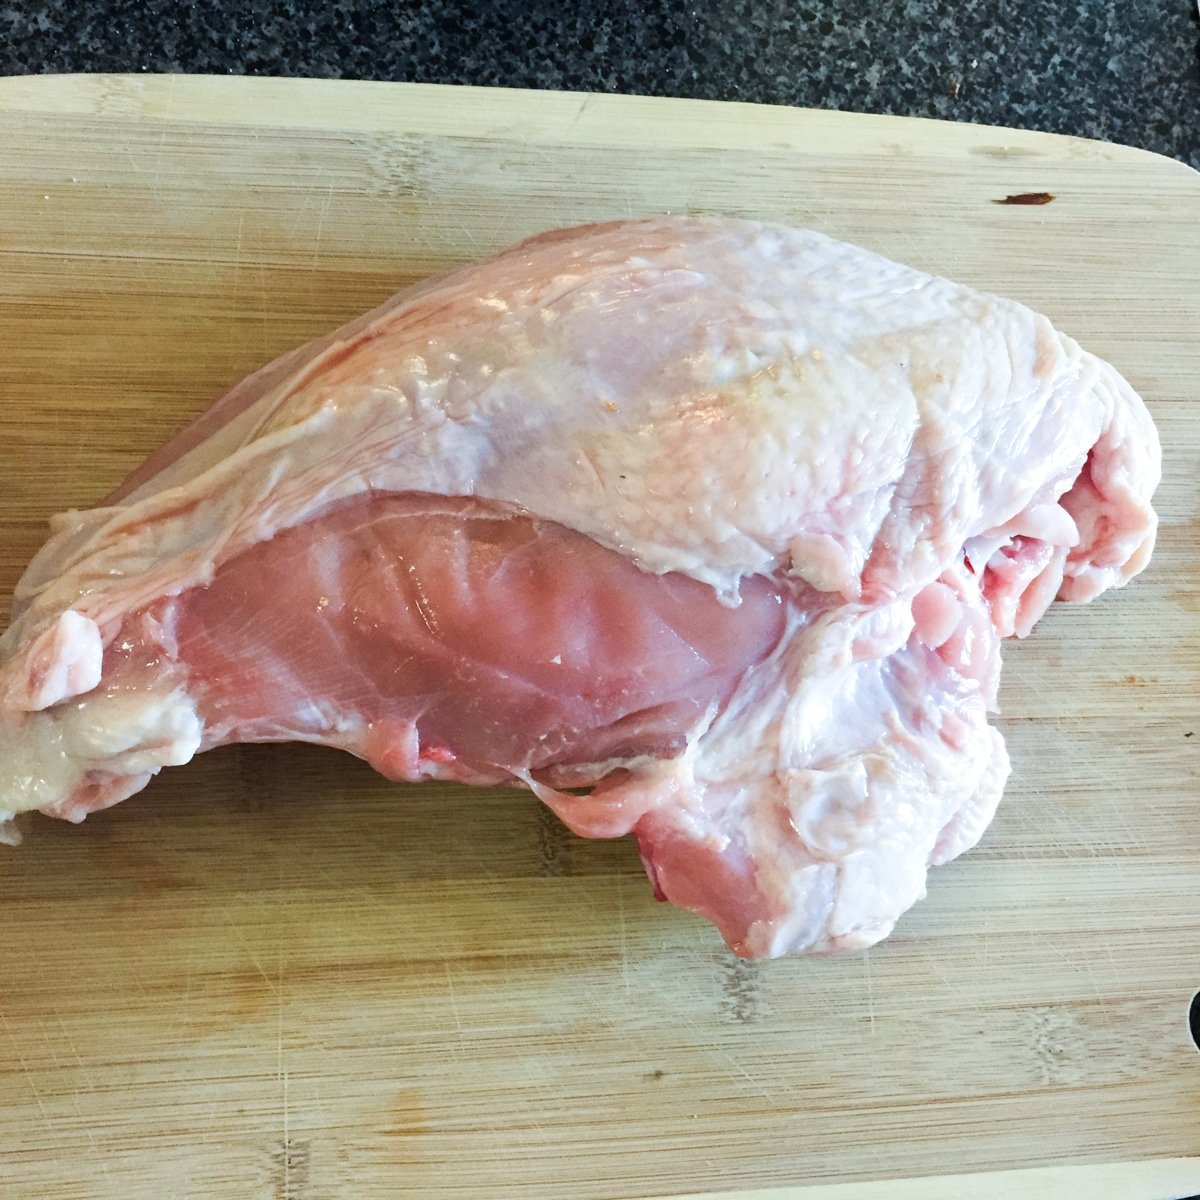 Frozen turkey breast on wood cutting board.